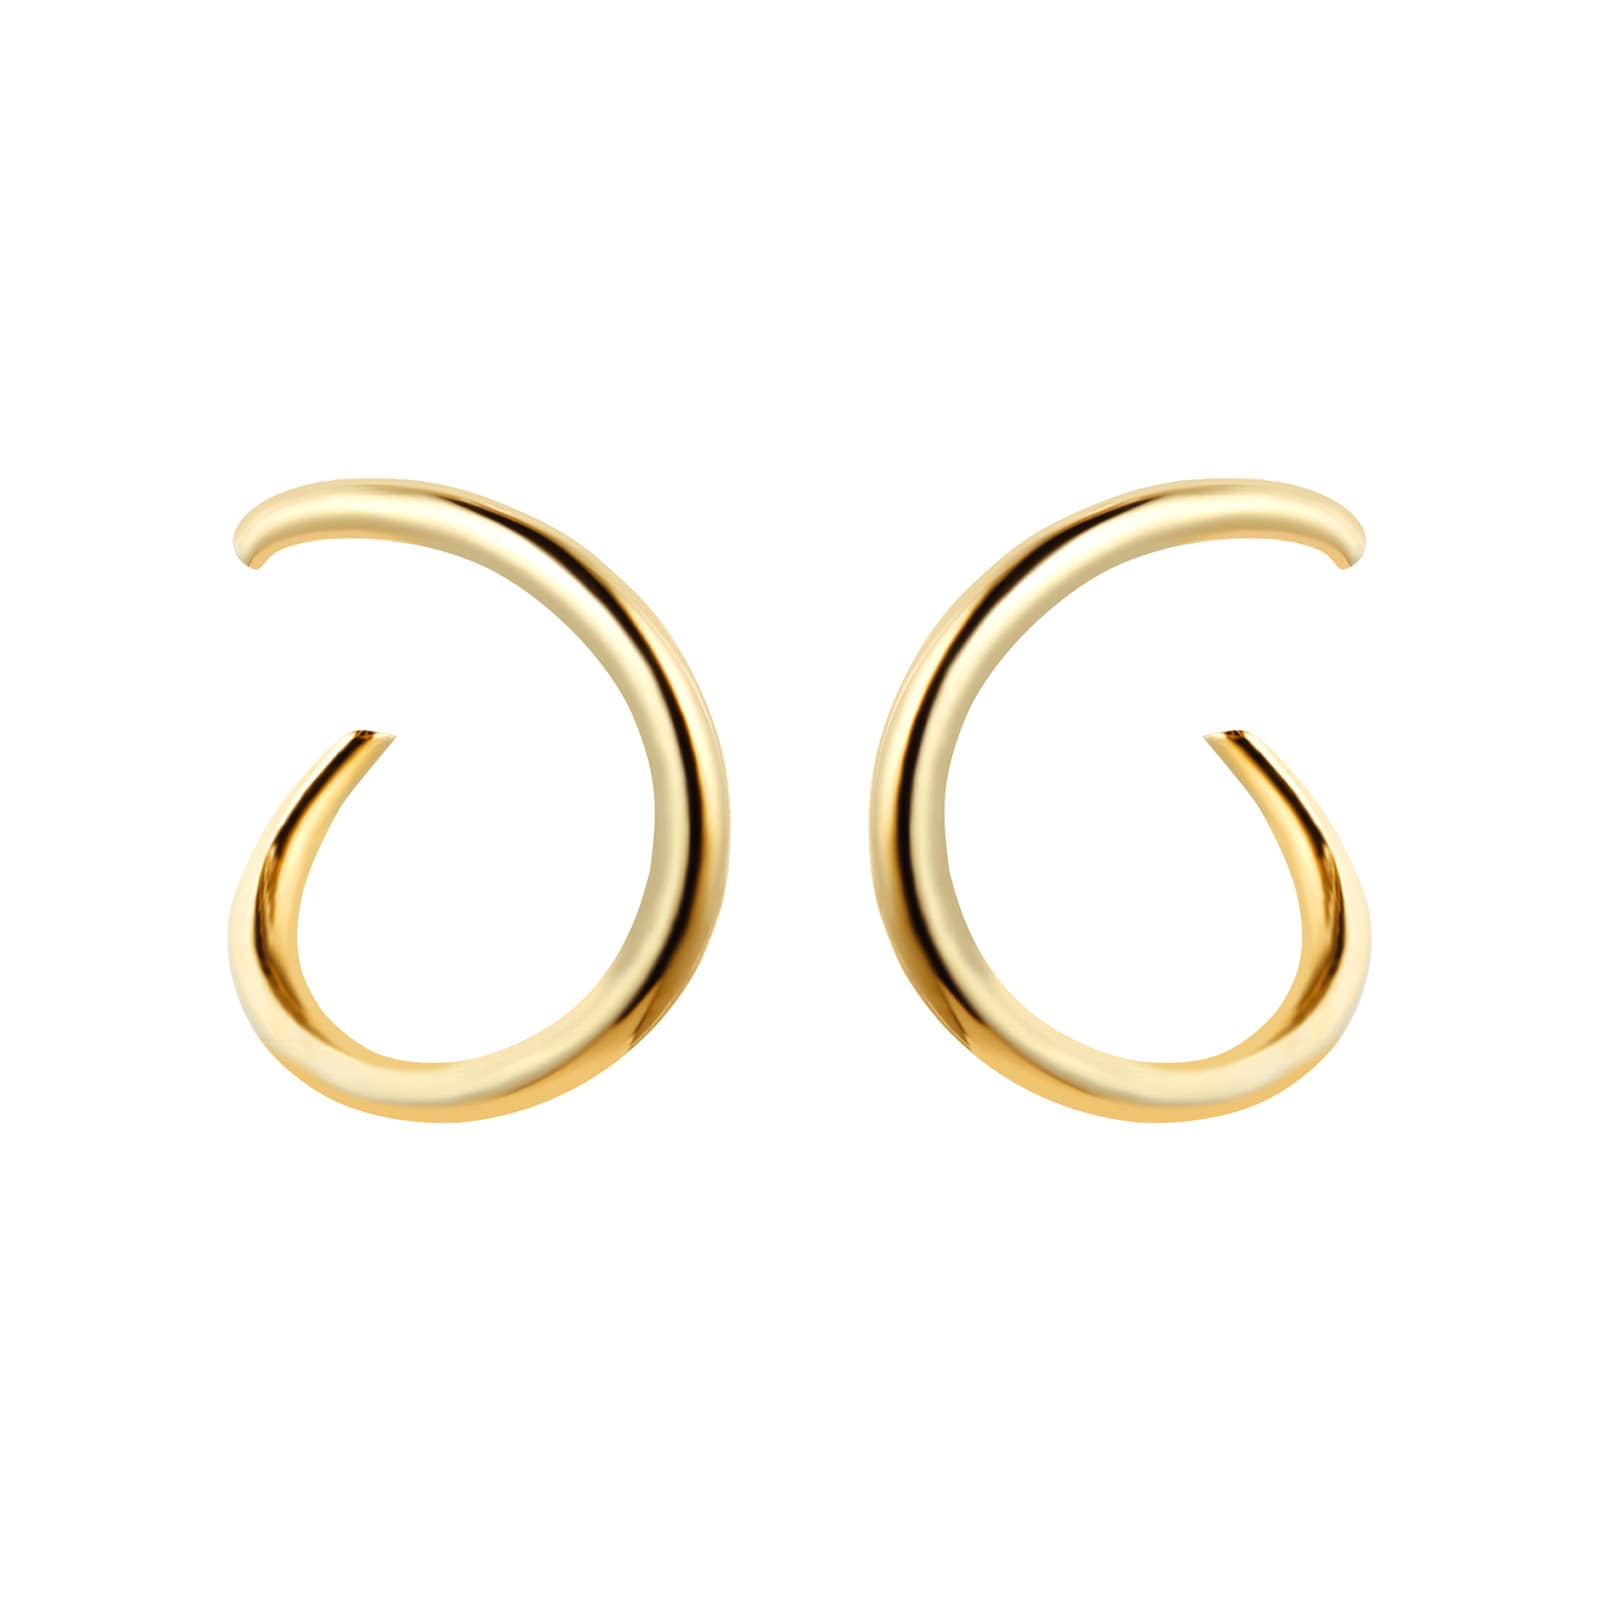 Earrings Jewellery Sale | Luxury Womens Earrings on Offer UK | Goldsmiths